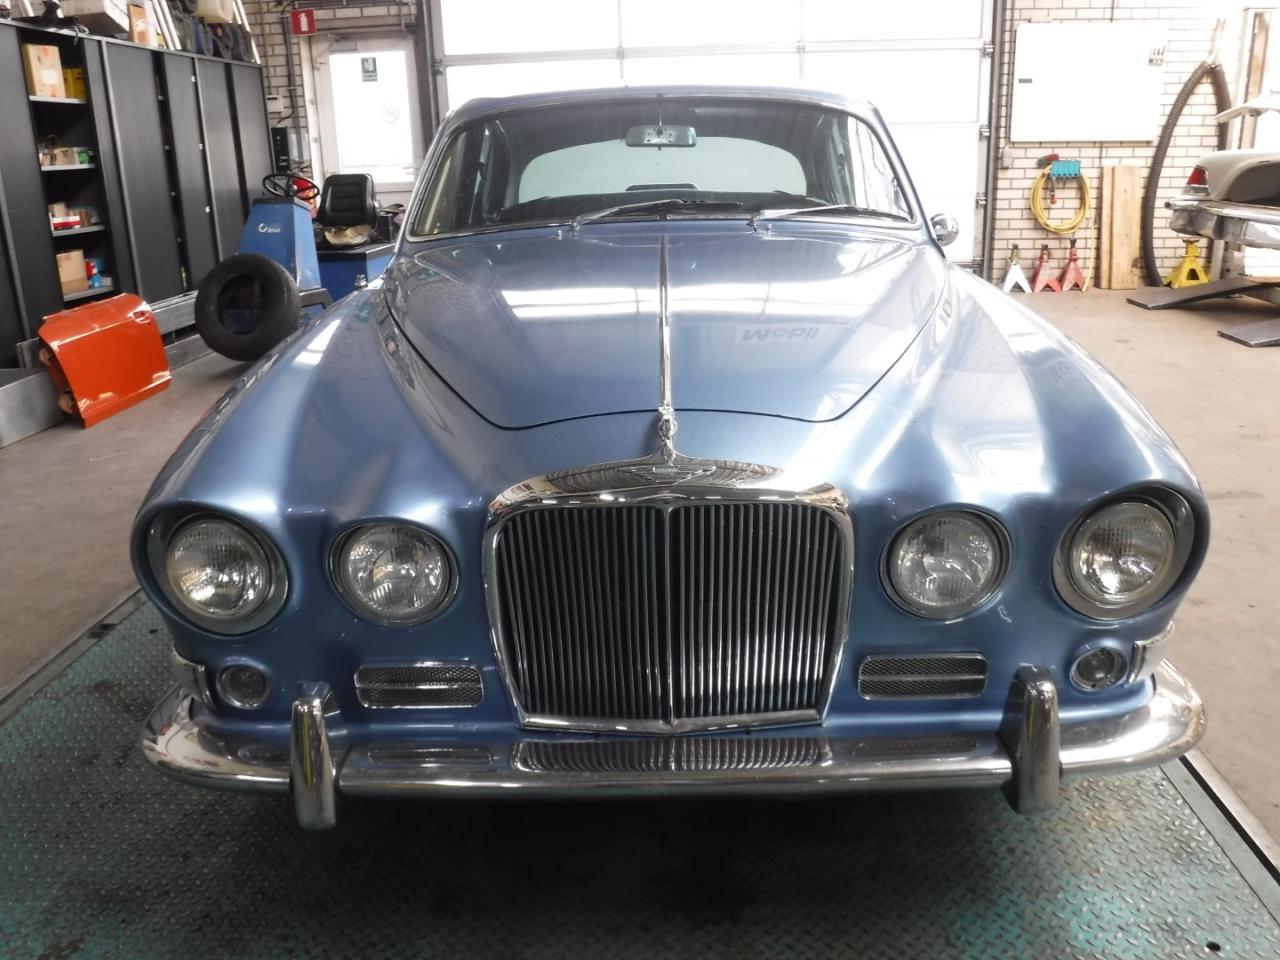 1967 Jaguar 420 blue